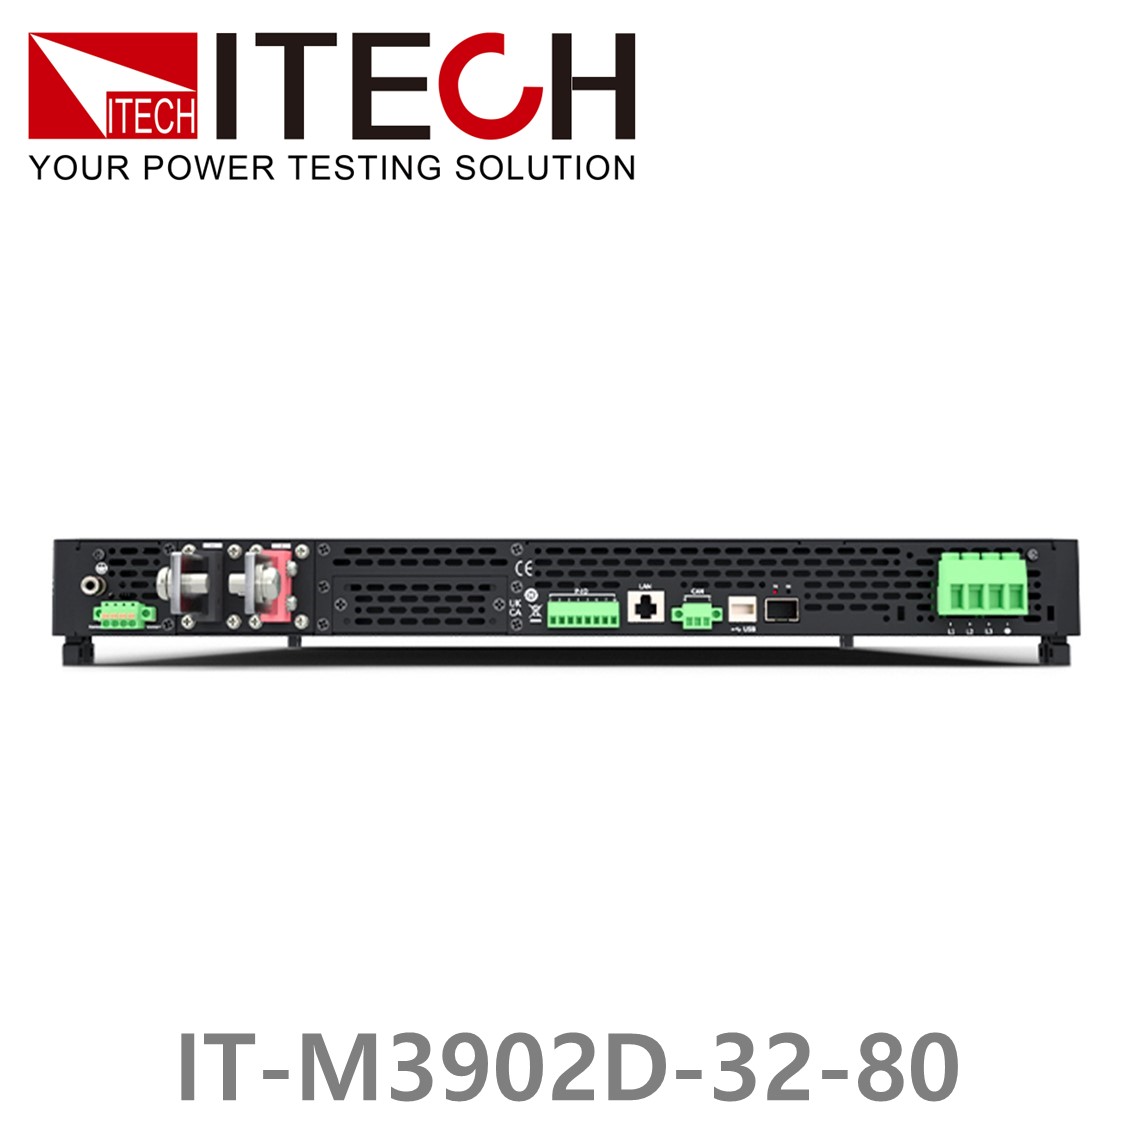 [ ITECH ] IT-M3902D-32-80 양방향 프로그래머블 DC전원공급기, DC파워서플라이